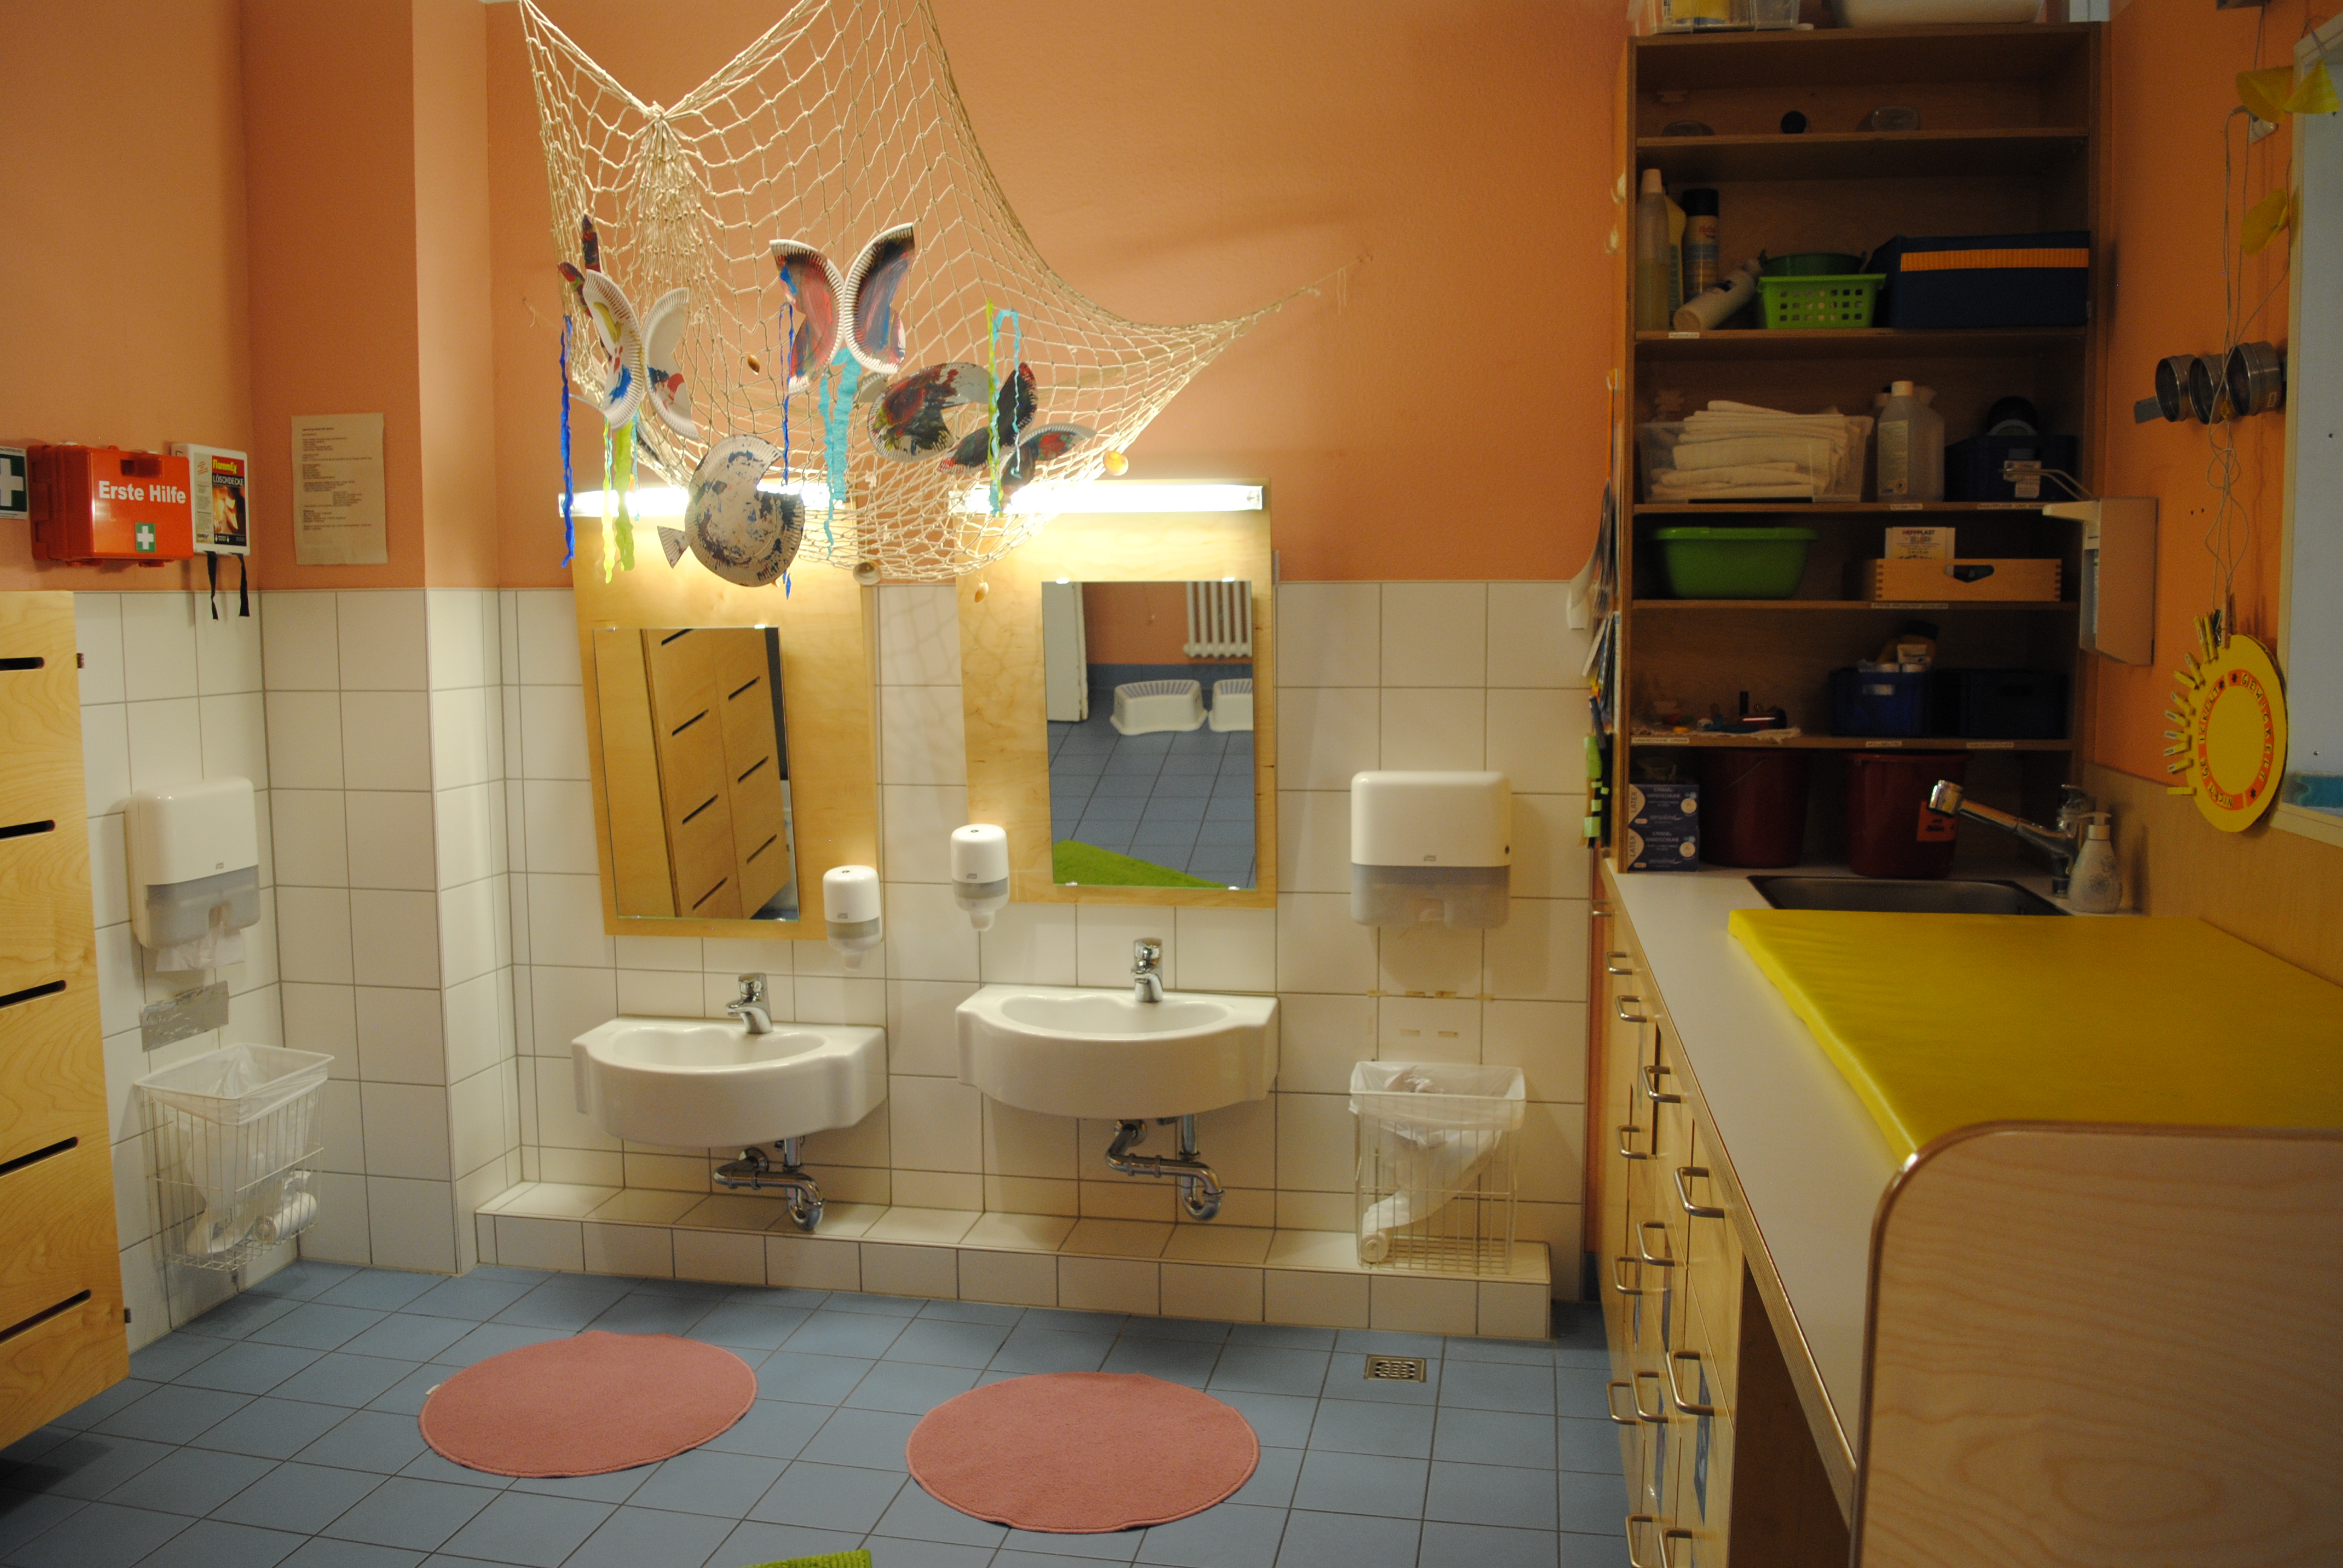 Das Bild zeigt zwei Waschbecken und unterschiedlicher Höhe und Spiegeln. Rechts ist der Wickelbereich. An der Decke wurde ein Netz mit Schmetterlingen als Dekoration aufgehängt.